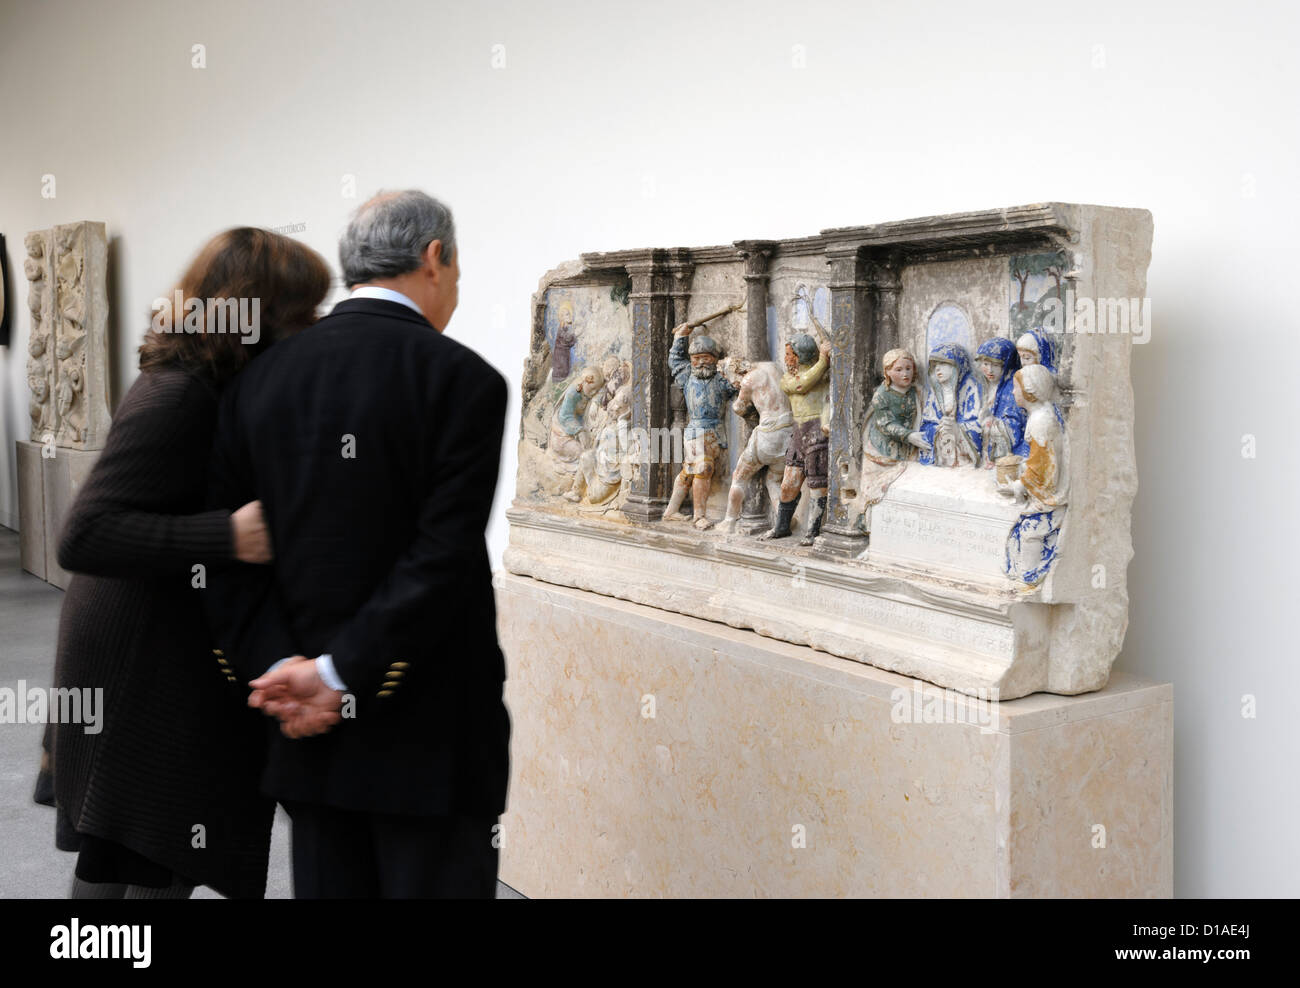 Deux visiteurs à la recherche d'une sculpture au xvie siècle par Jean de Rouen au Musée Machado de Castro à Coimbra, Portugal, Europe Banque D'Images